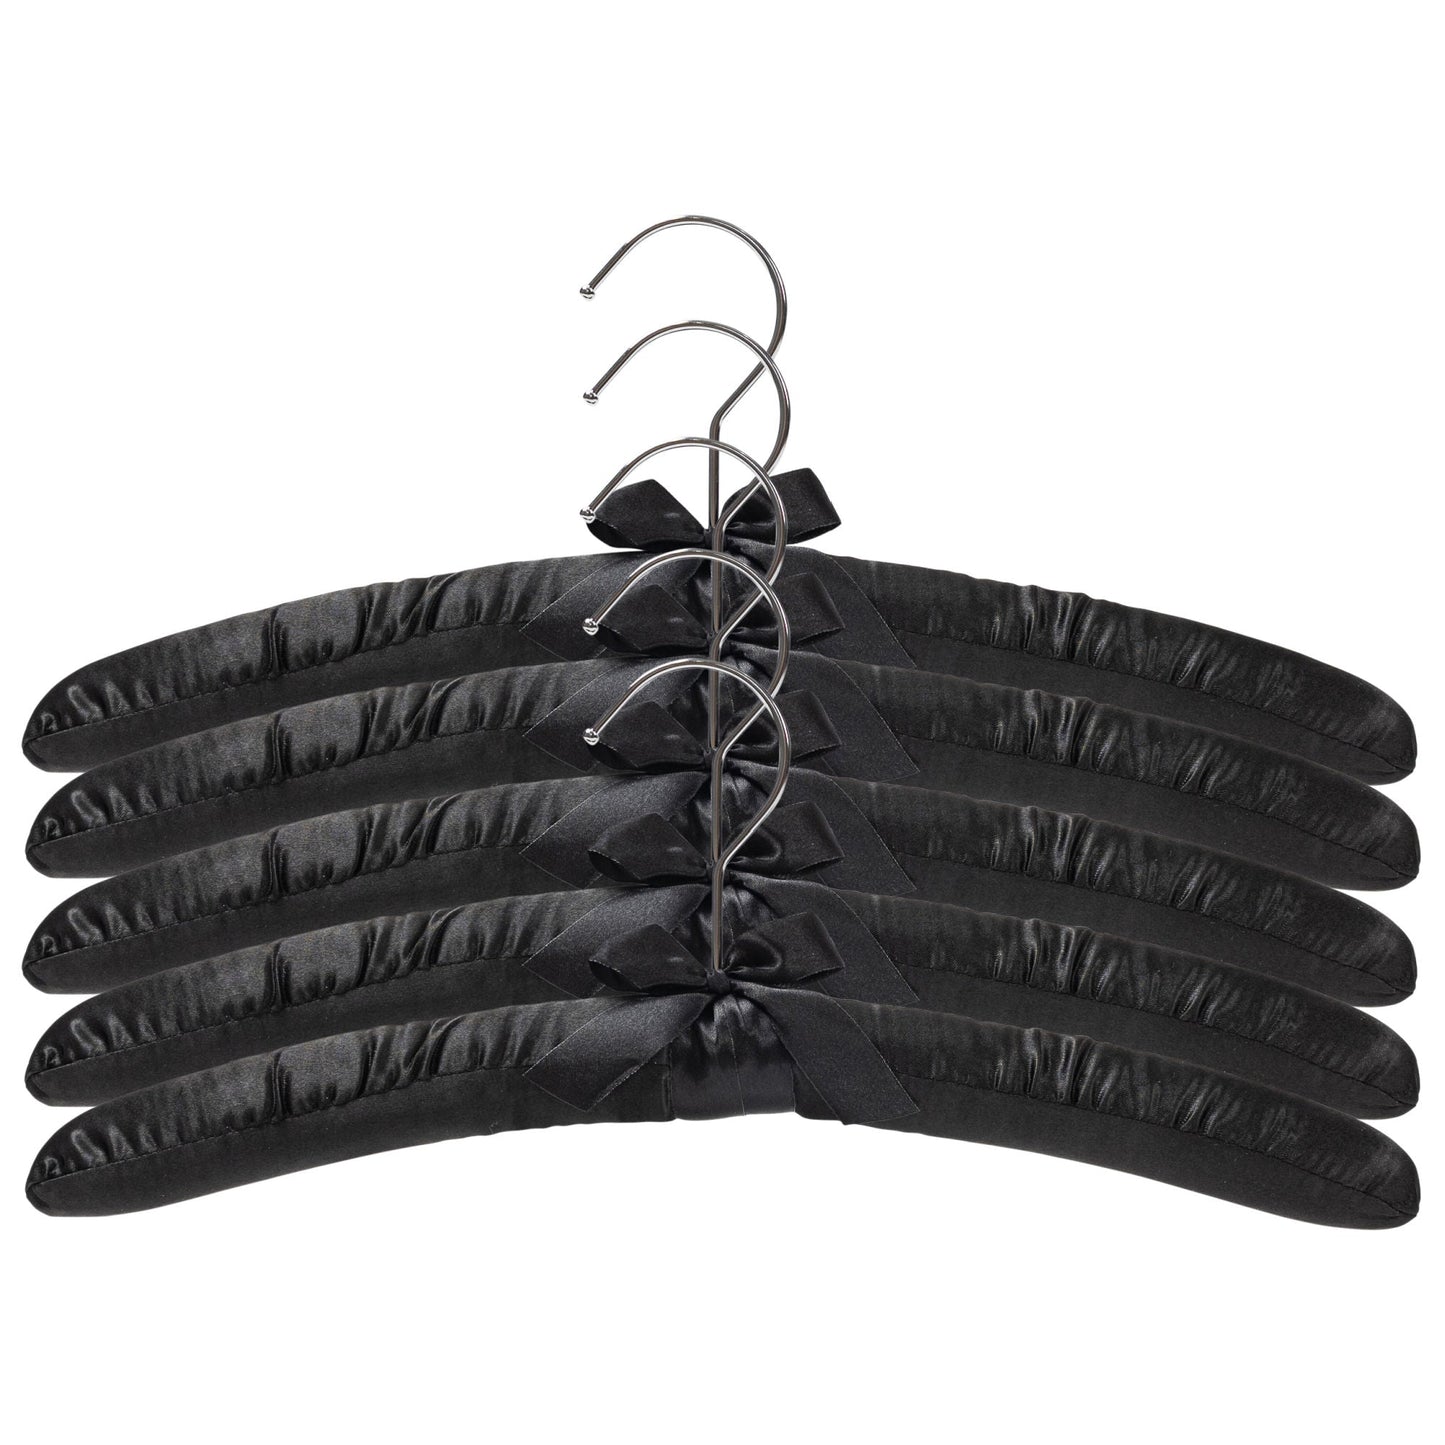 38cm Black Satin Padded Coat Hanger with Chrome Hook-Sold in Bundle of 10/25/50 - Rackshop Australia